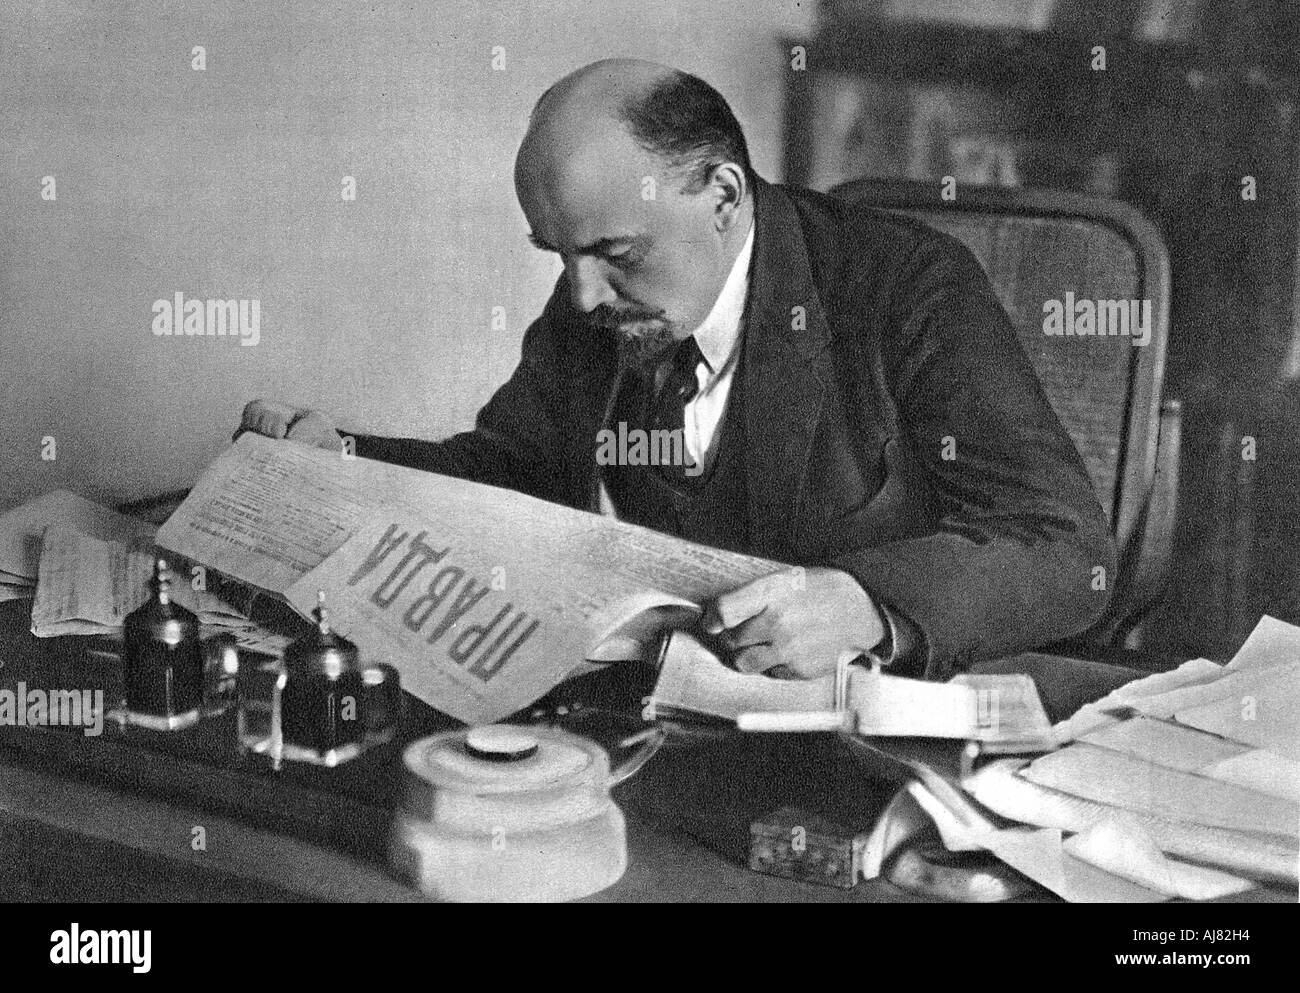 Vladimir Ilyich Ulyanov (Lenin), Russian Bolshevik revolutionary, reading Pravda, 1918. Artist: Unknown Stock Photo